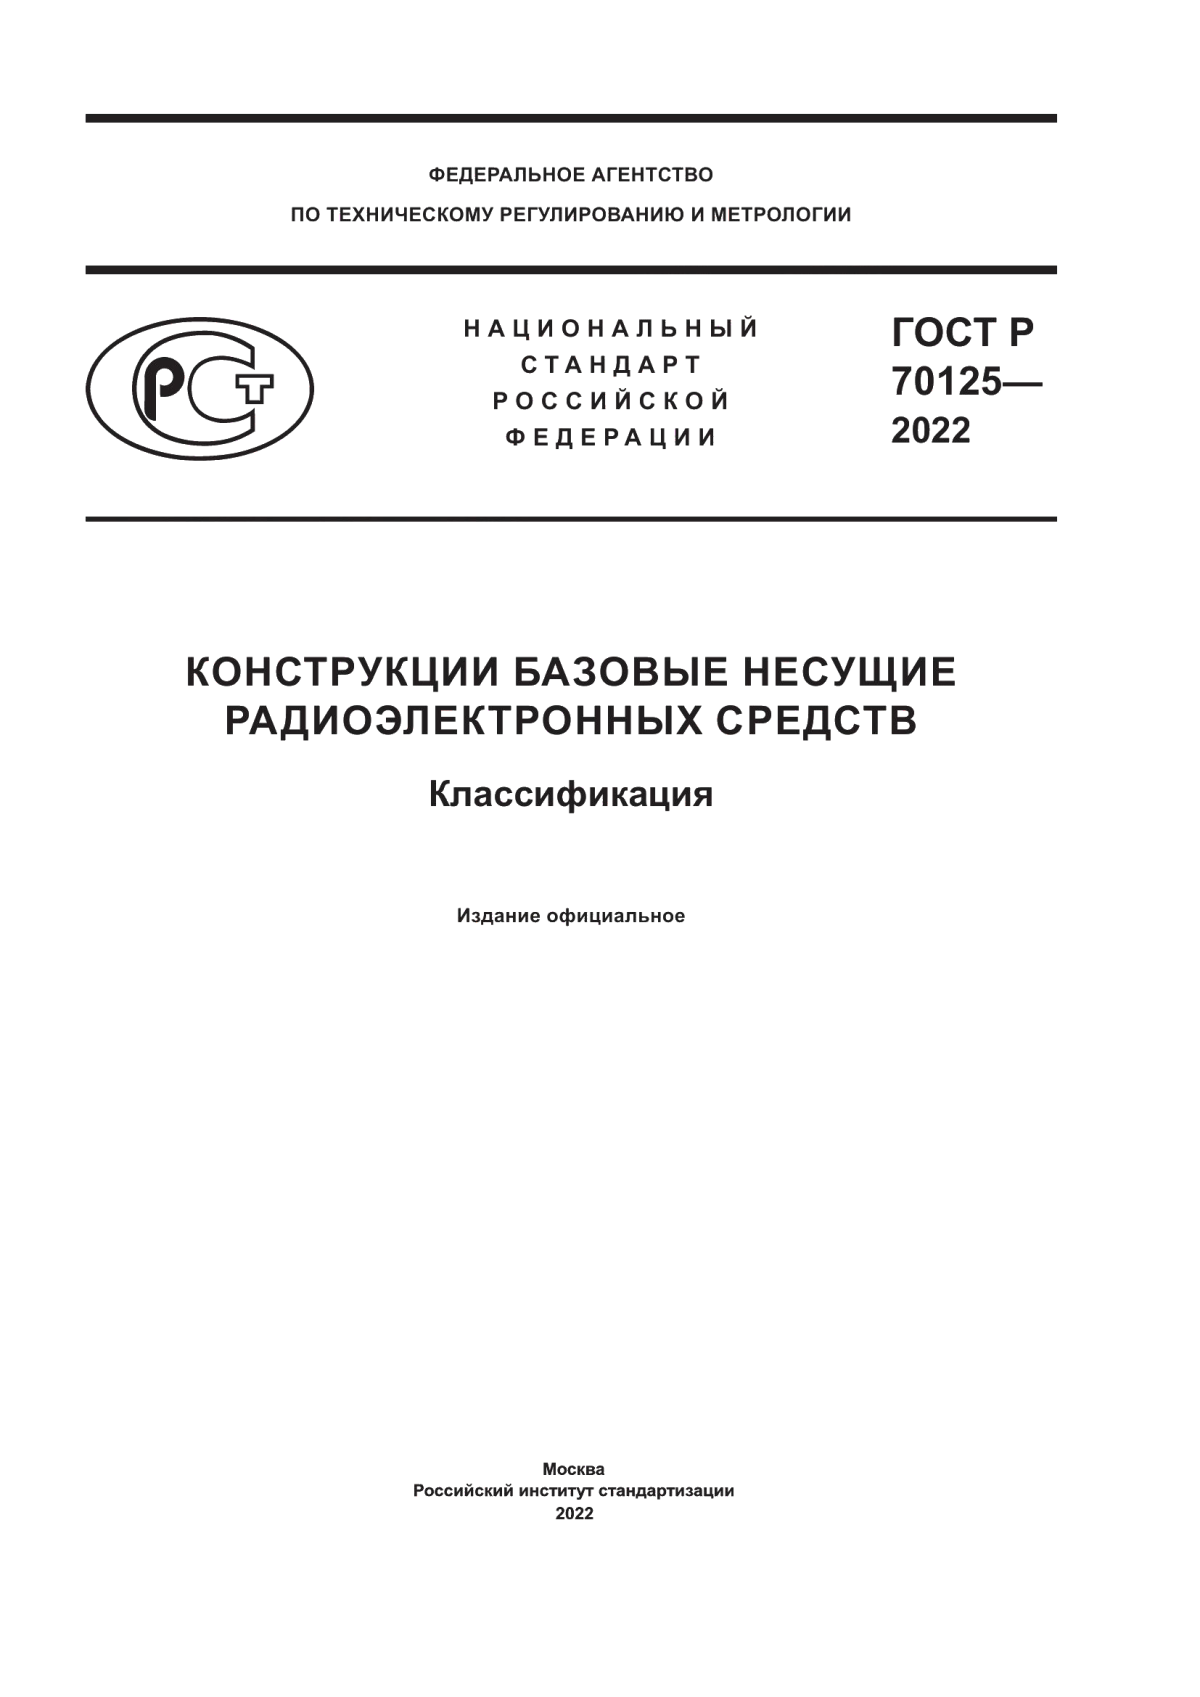 ГОСТ Р 70125-2022 Конструкции базовые несущие радиоэлектронных средств. Классификация